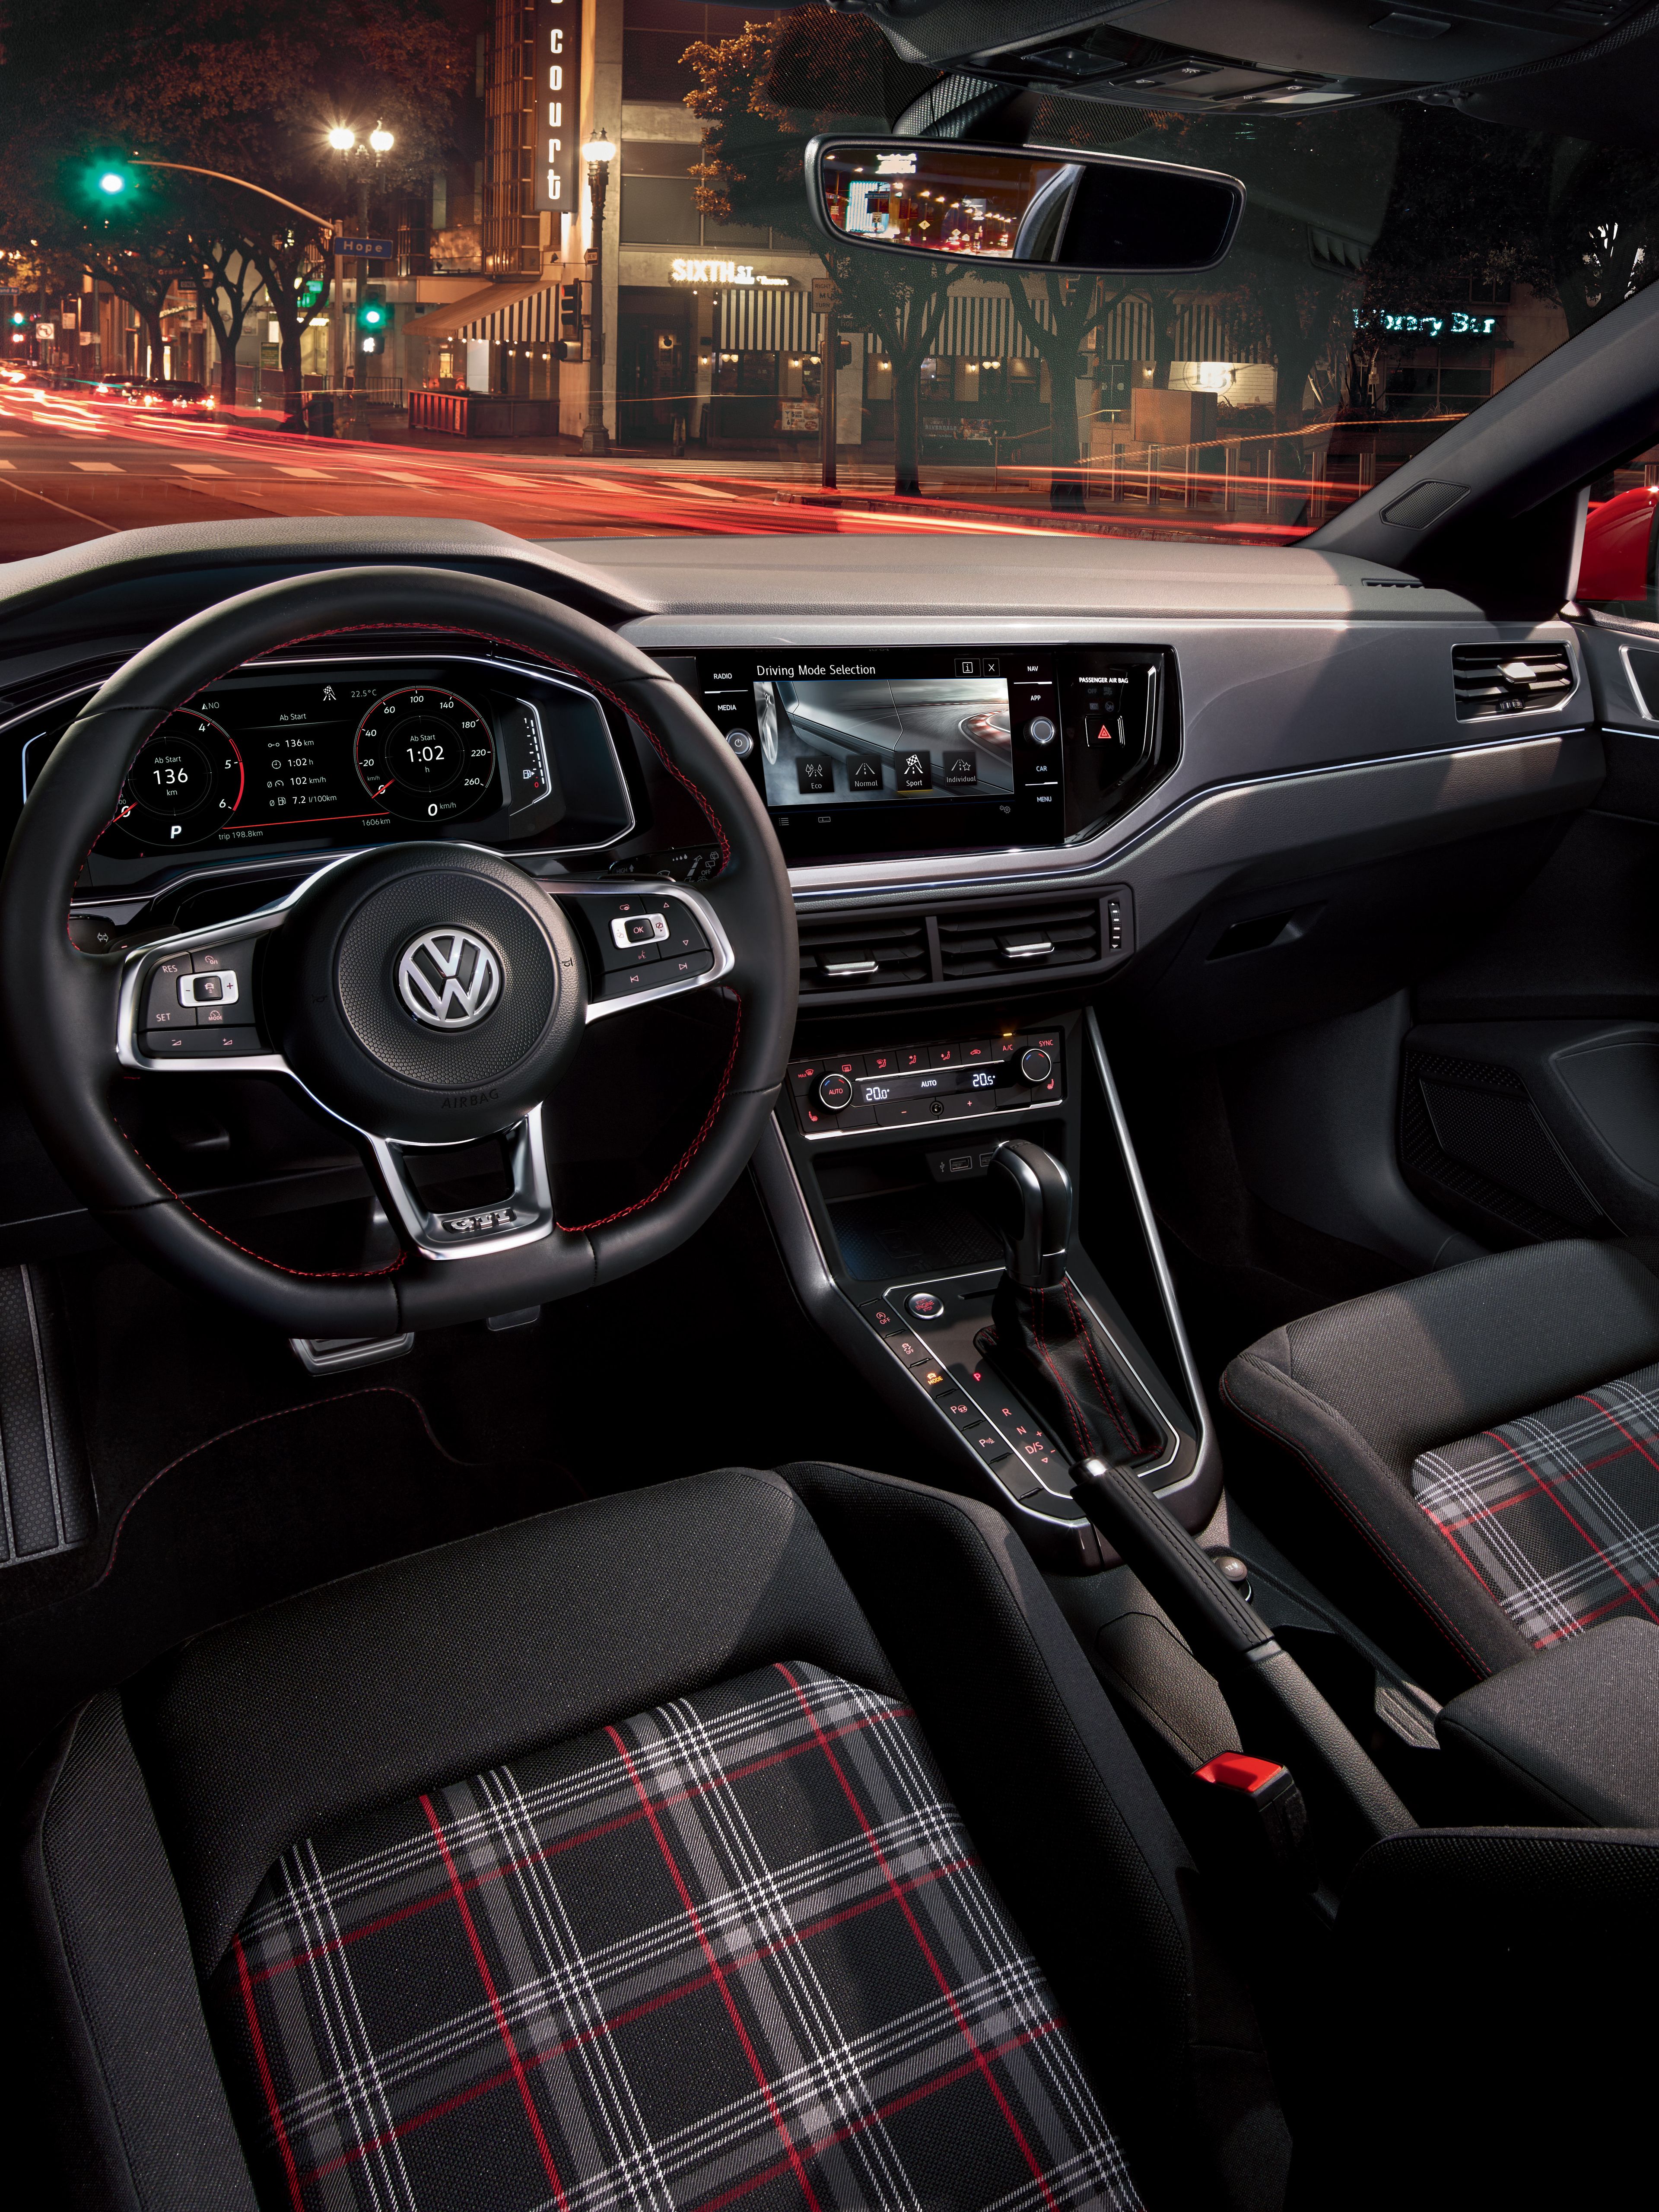 VW Volkswagen Polo GTI Vorgängermodell Interieur und Cockpit